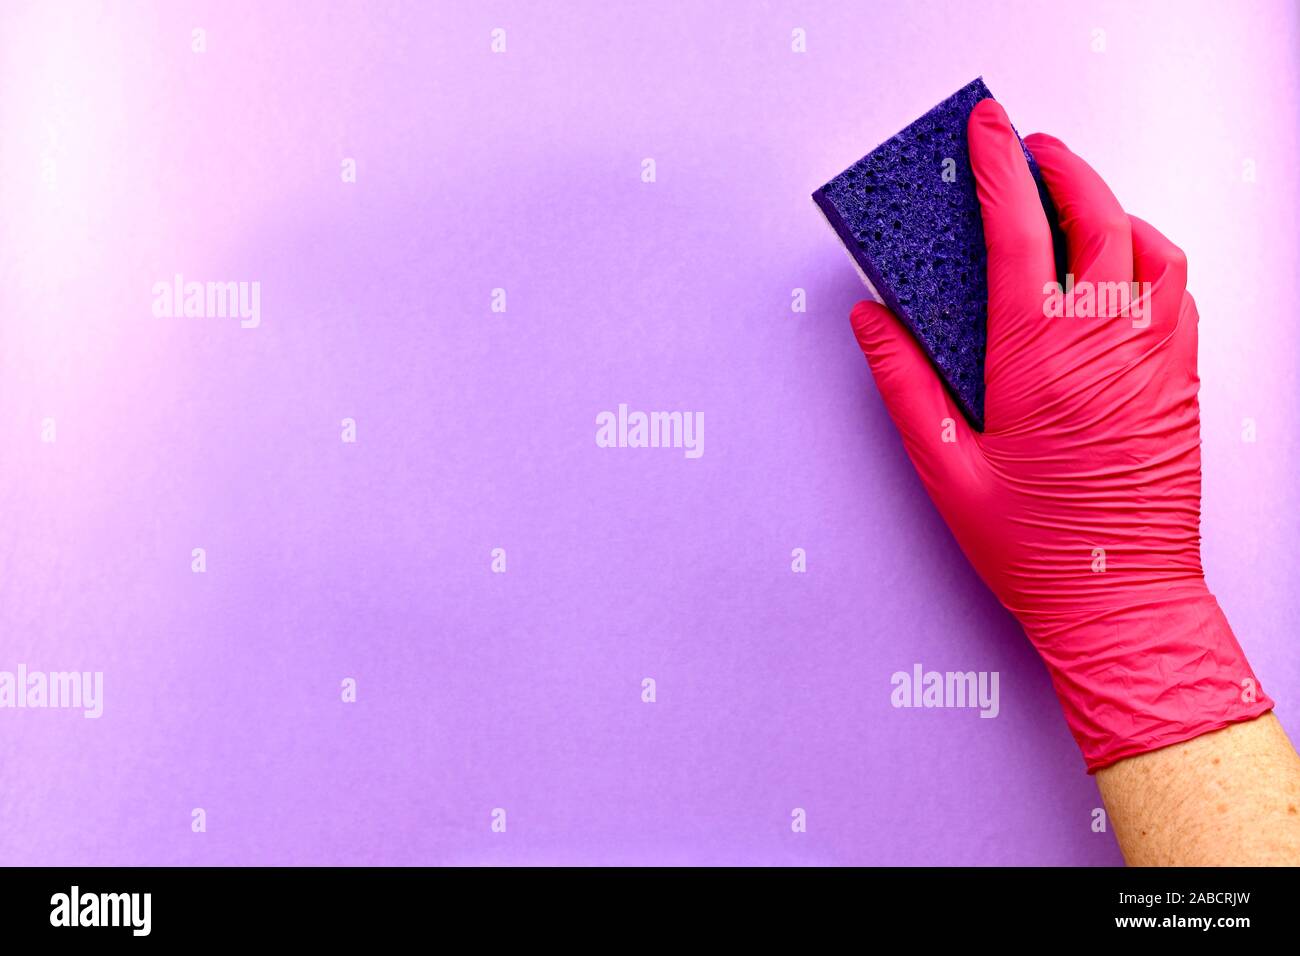 La mano derecha con un guante de goma con un lavado de esponja de celulosa, una superficie porosa, sobre un fondo violeta. Foto de stock